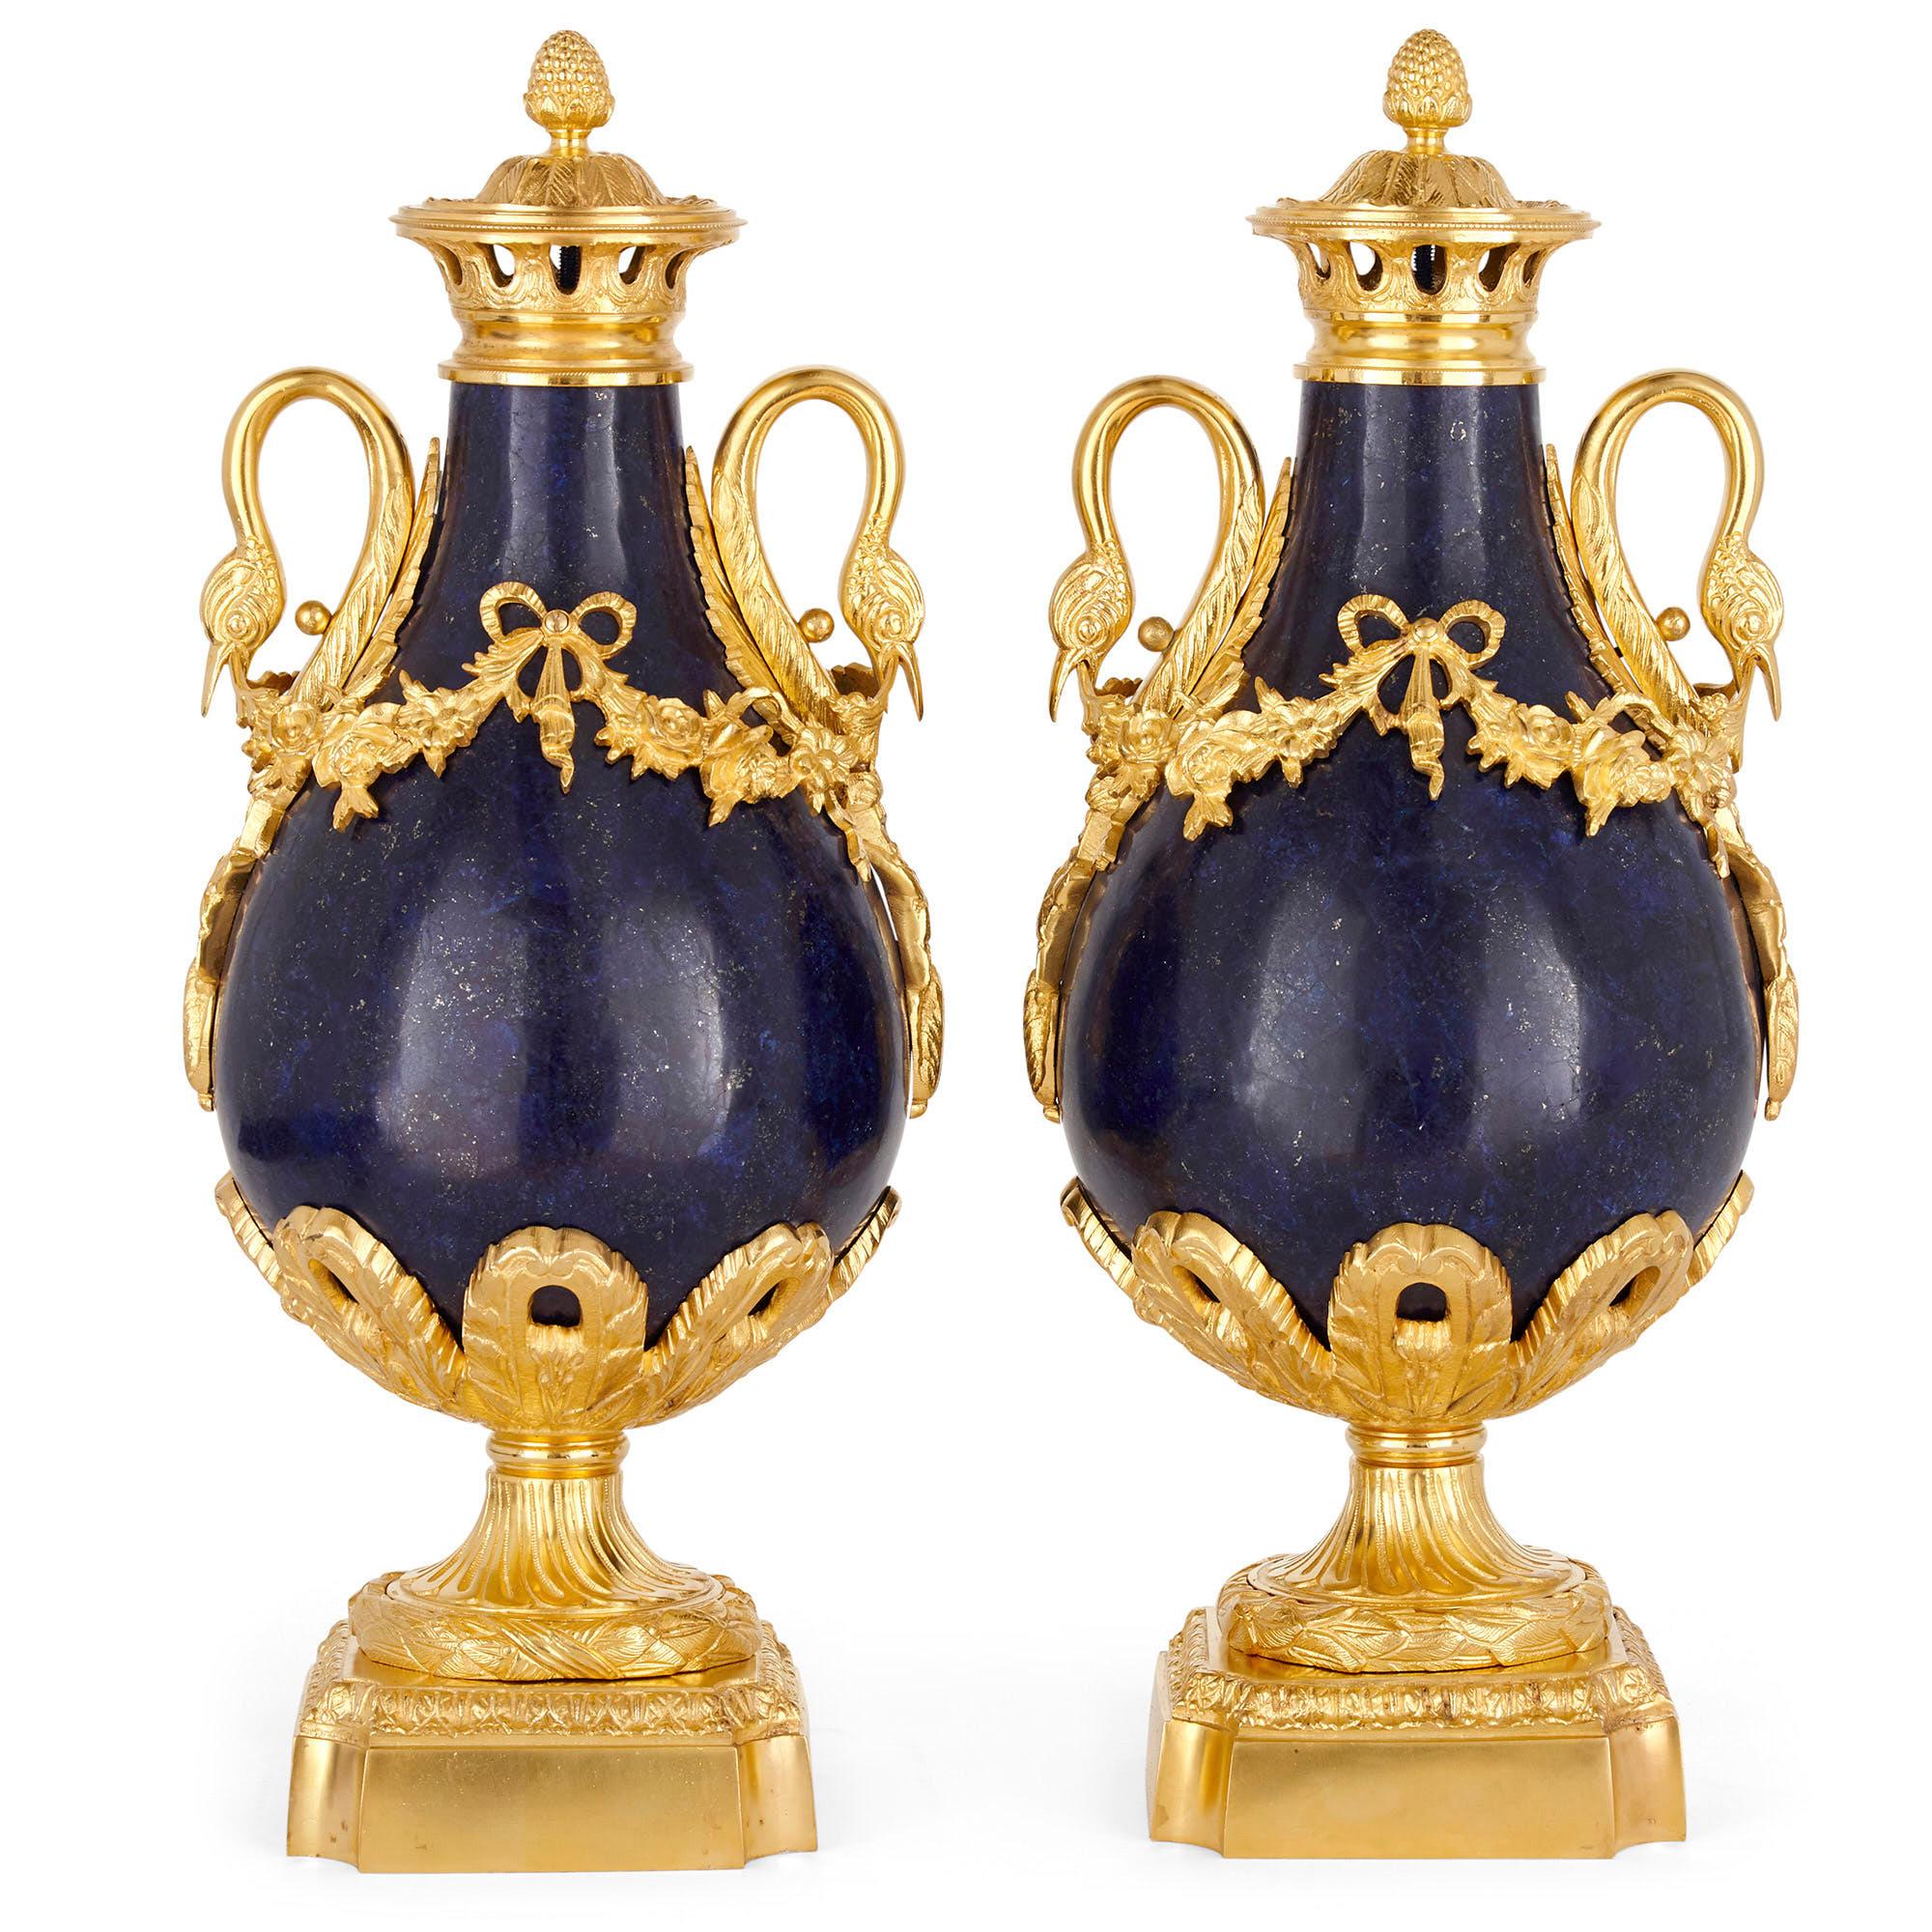 Paar französische Vasen im neoklassischen Stil aus Lapis und vergoldeter Bronze
Französisch, Ende 19. Jahrhundert
Maße: Höhe 46cm, Durchmesser 19cm

Jede Vase dieses Paars ist aus vergoldeter Bronze gefertigt, auf die Lapislazuli aufgezogen